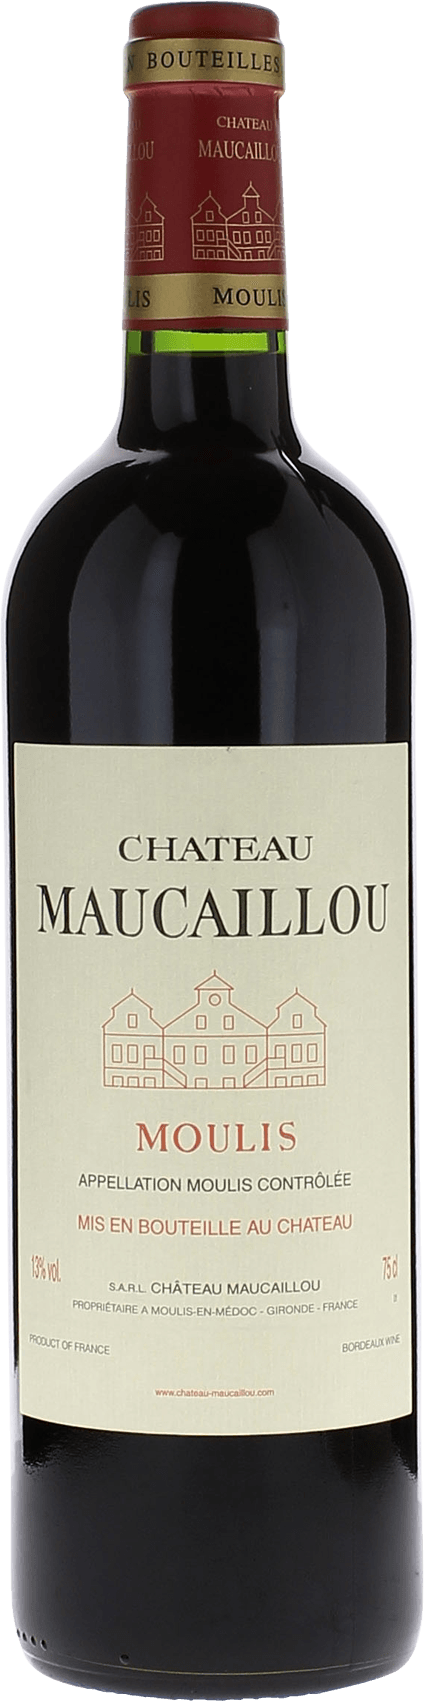 Maucaillou 2016 Cru Bourgeois Suprieur Moulis, Bordeaux rouge